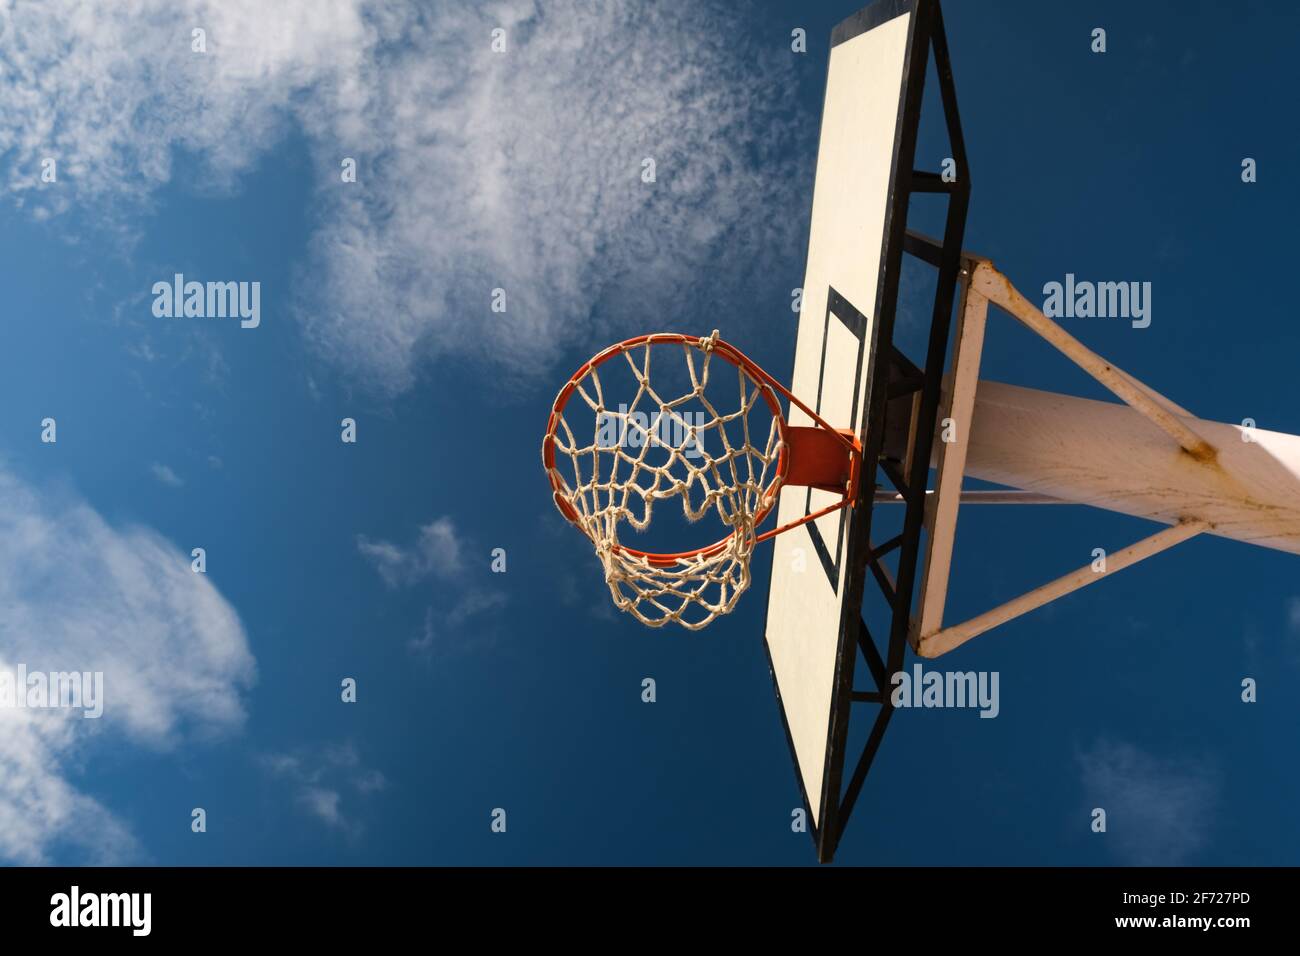 Leerer Basketballkorb aus niedrigerem Blickwinkel, heller, schöner Tag,  offener Himmel. Ziele hoch/erreiche dein Zielkonzept Stockfotografie - Alamy